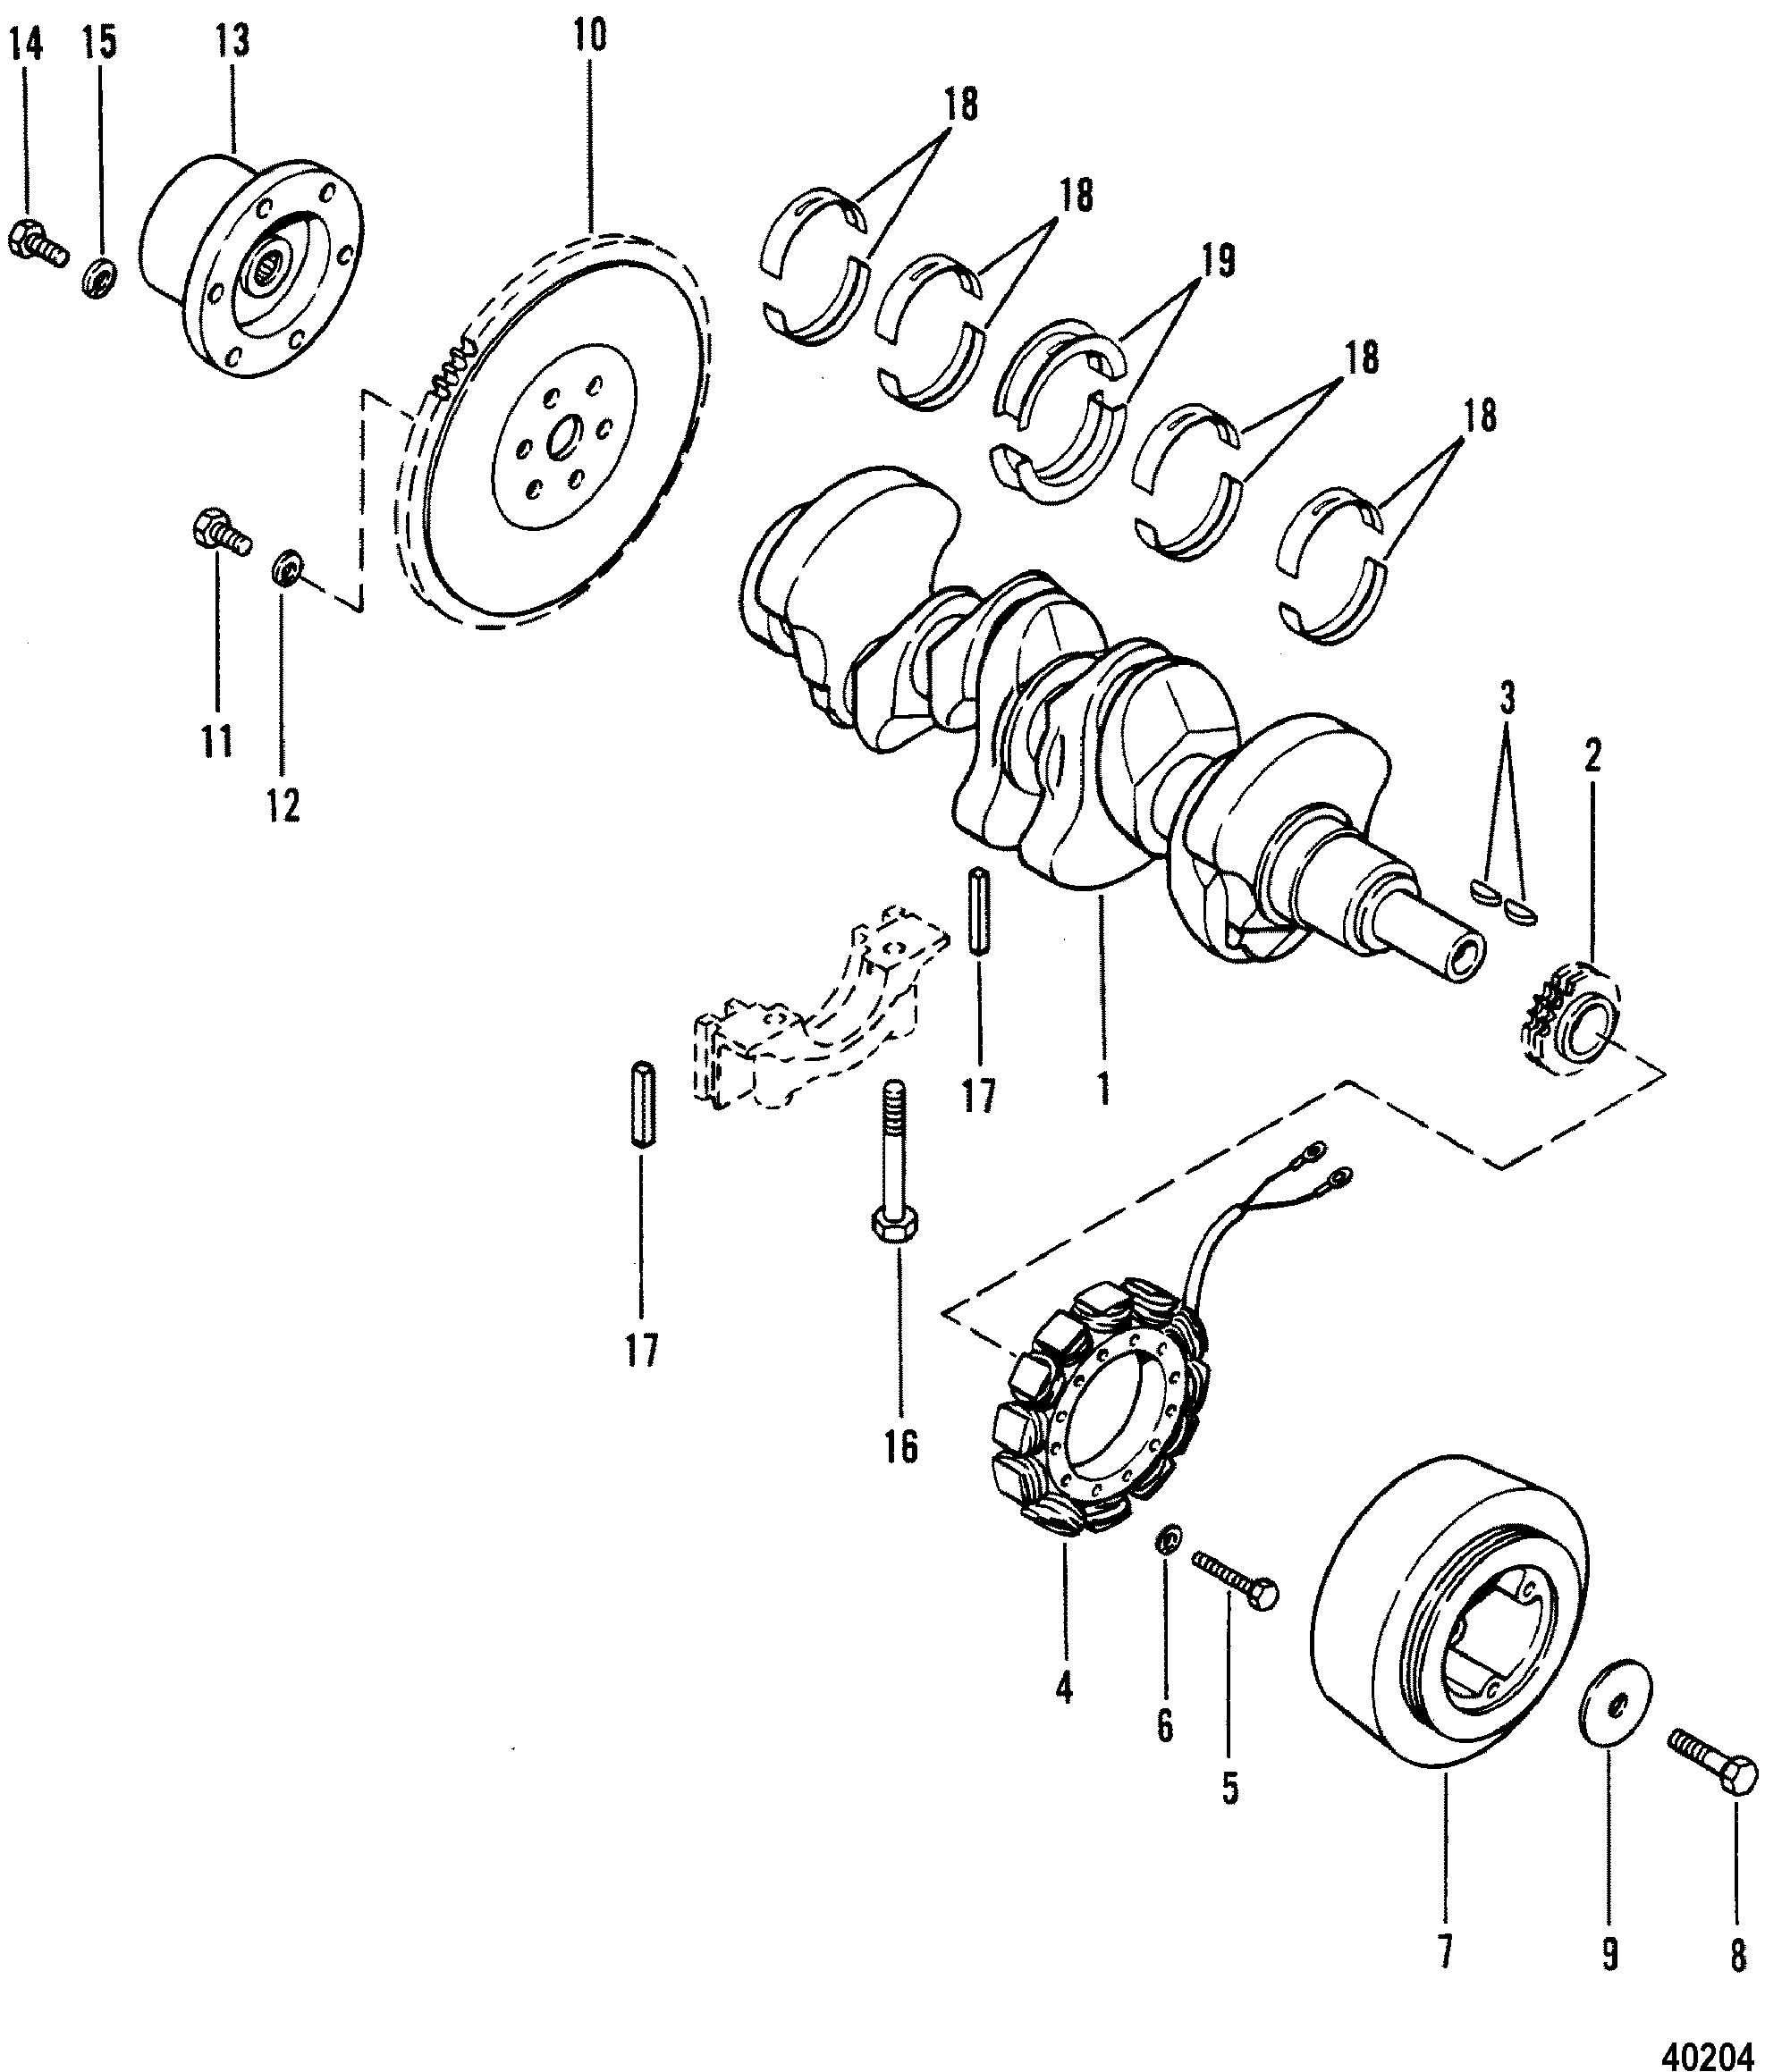 Mercruiser 470 Wiring Diagram 1